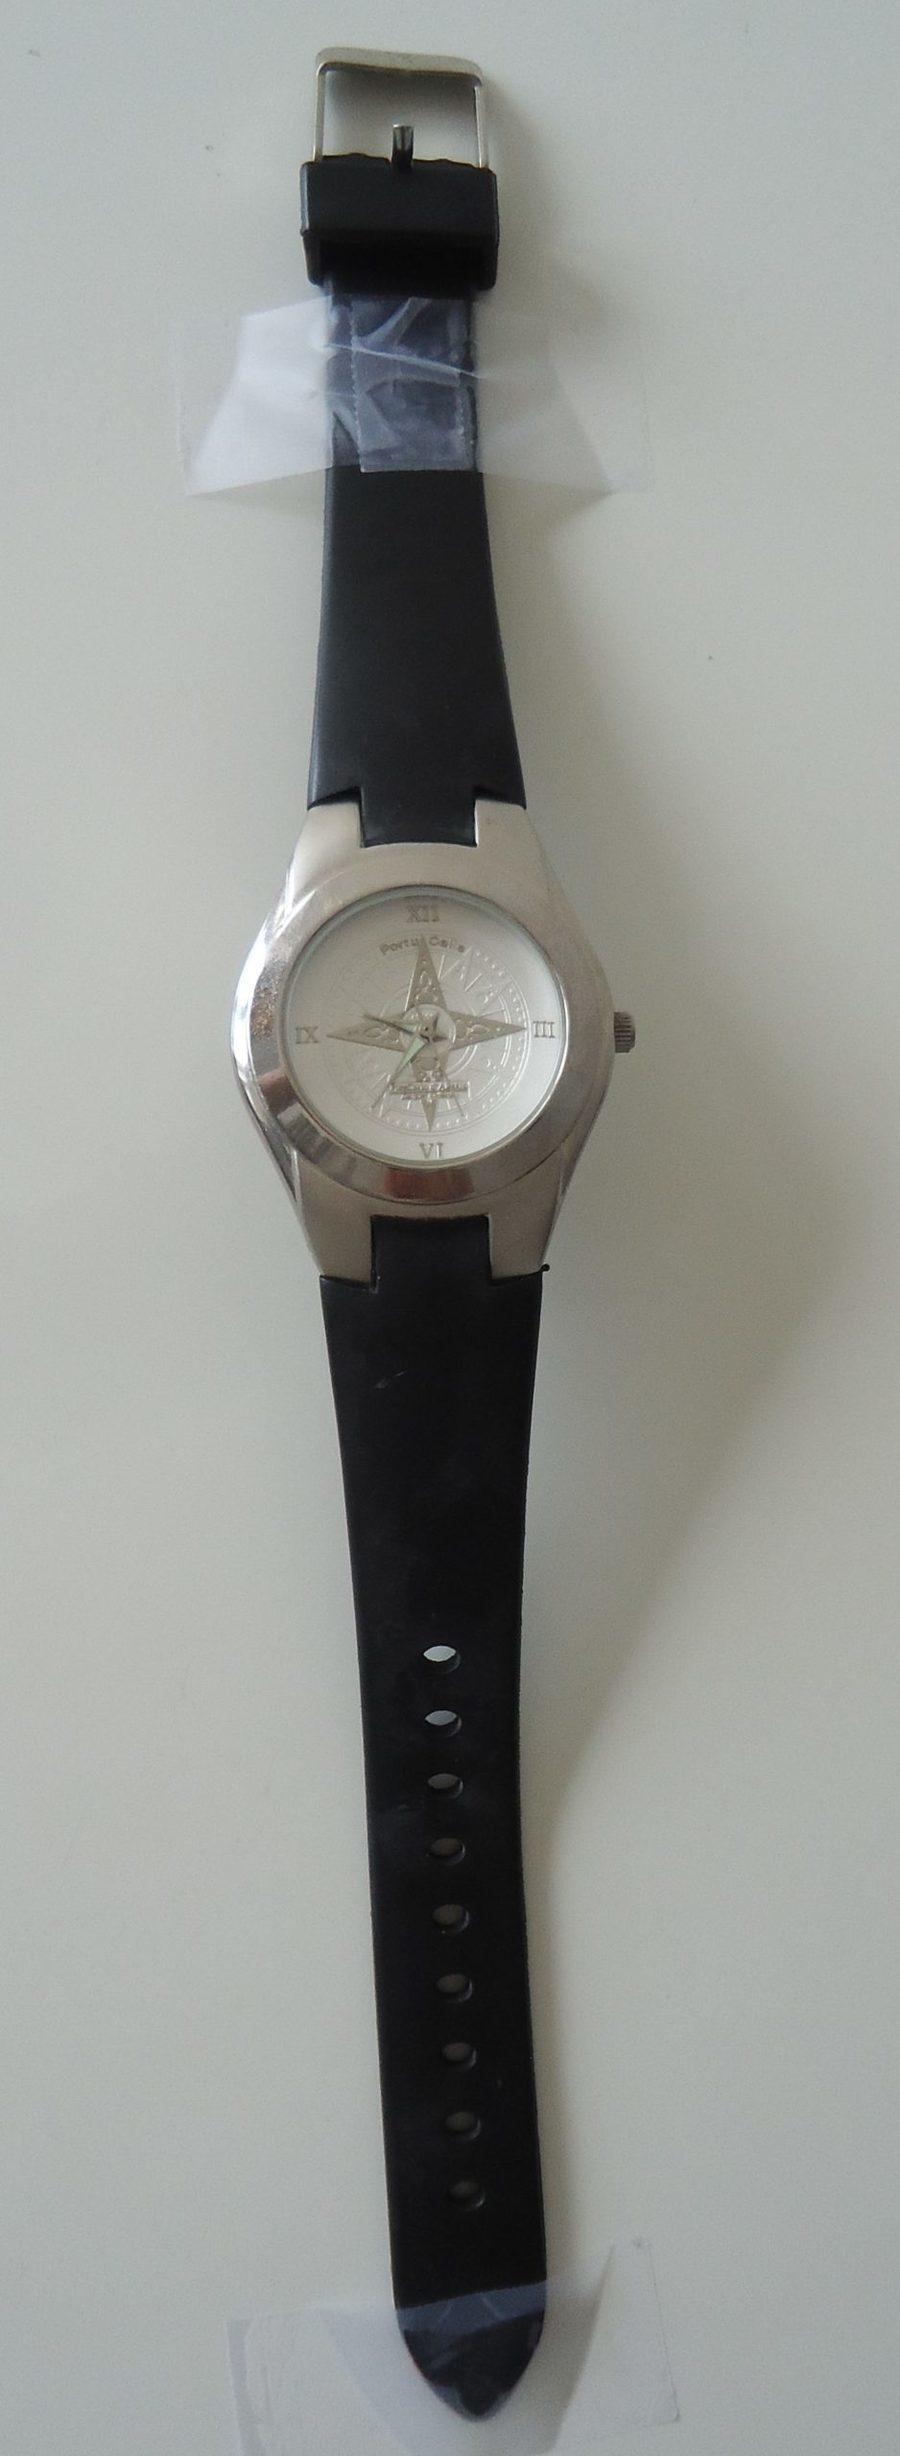 PortuCalis Elegance - Relógio de pulso vintage 1